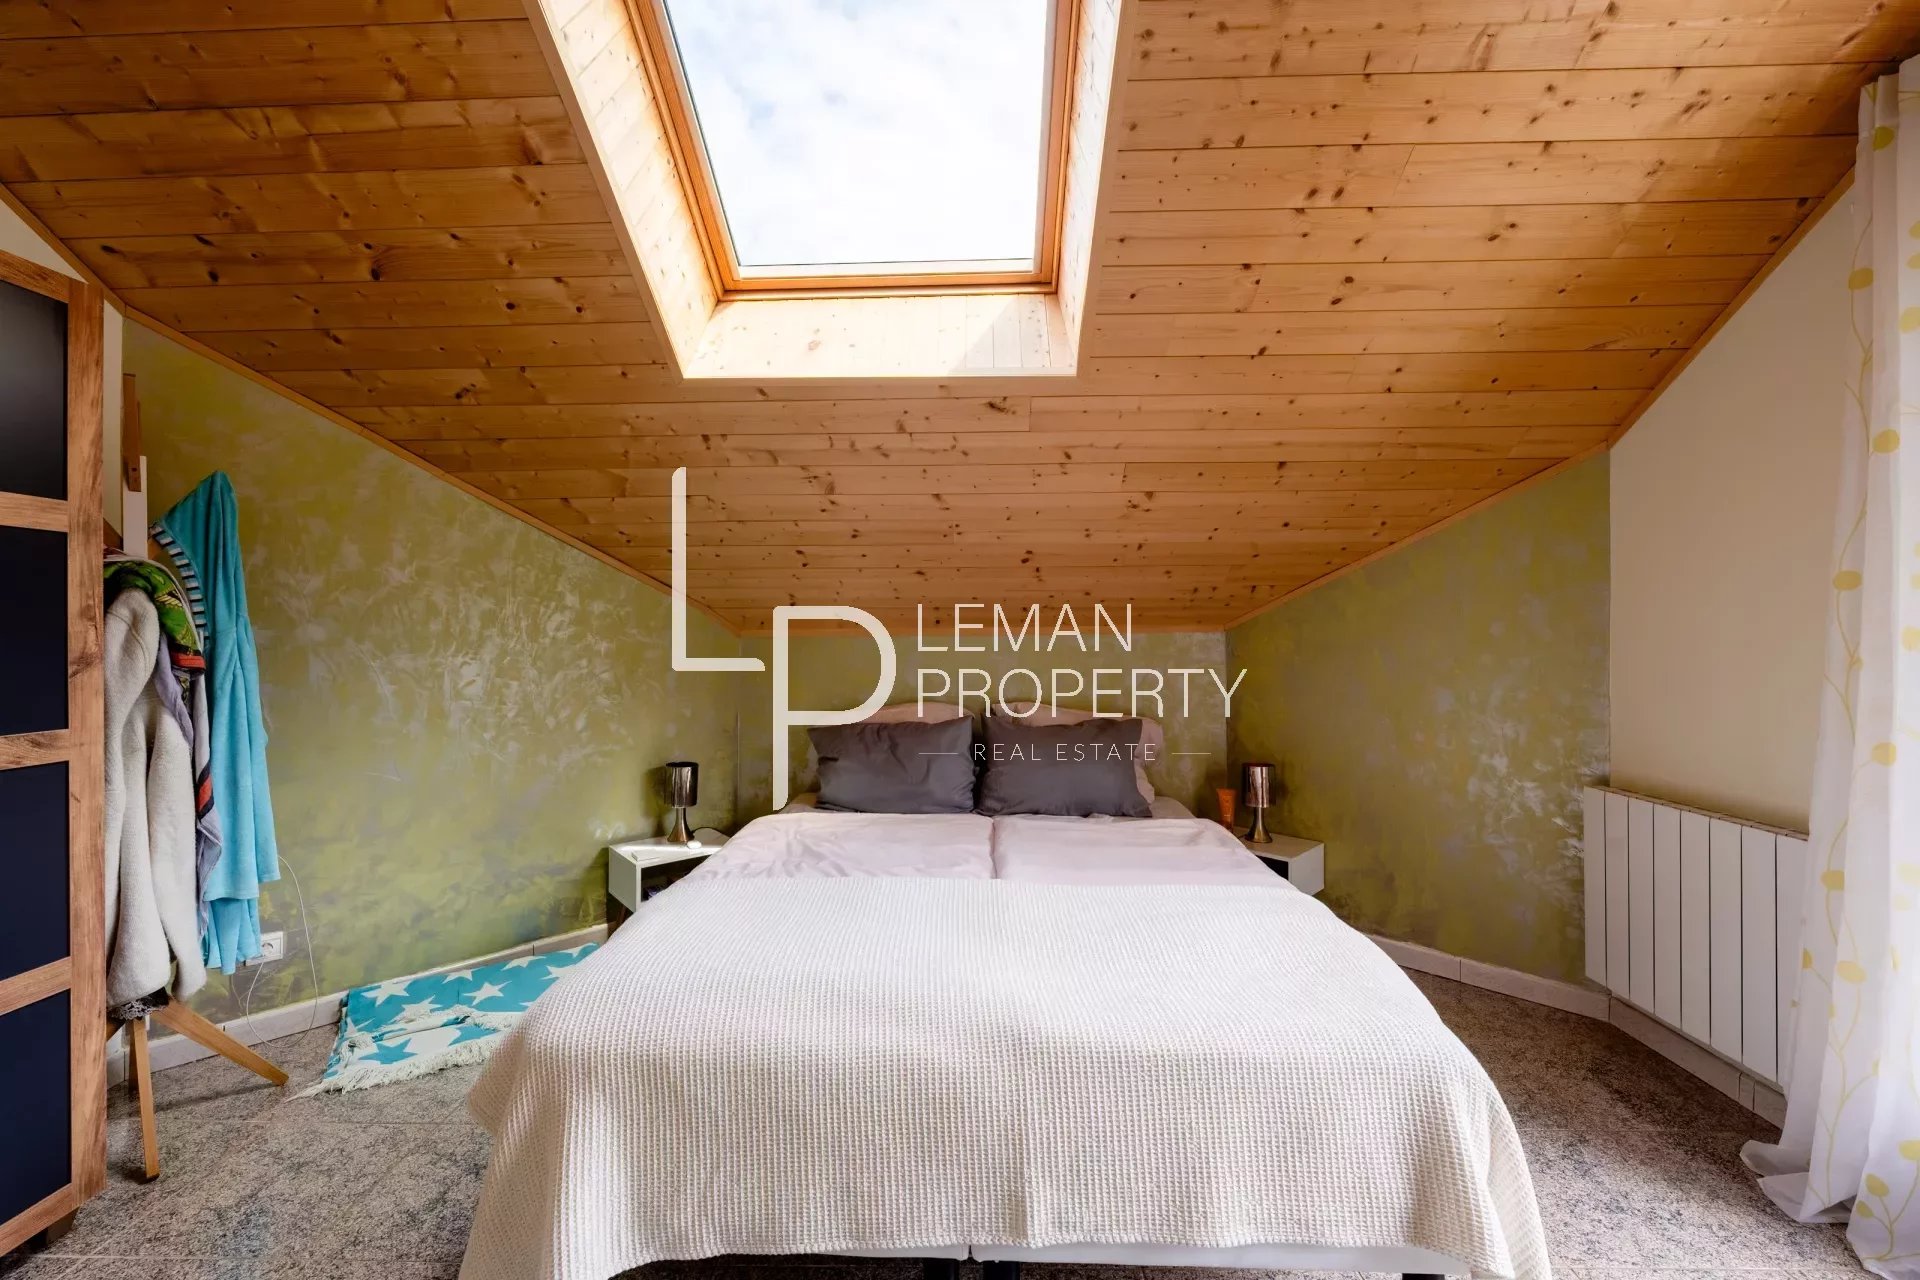 L'agence Leman property vous propose un maison à la vente